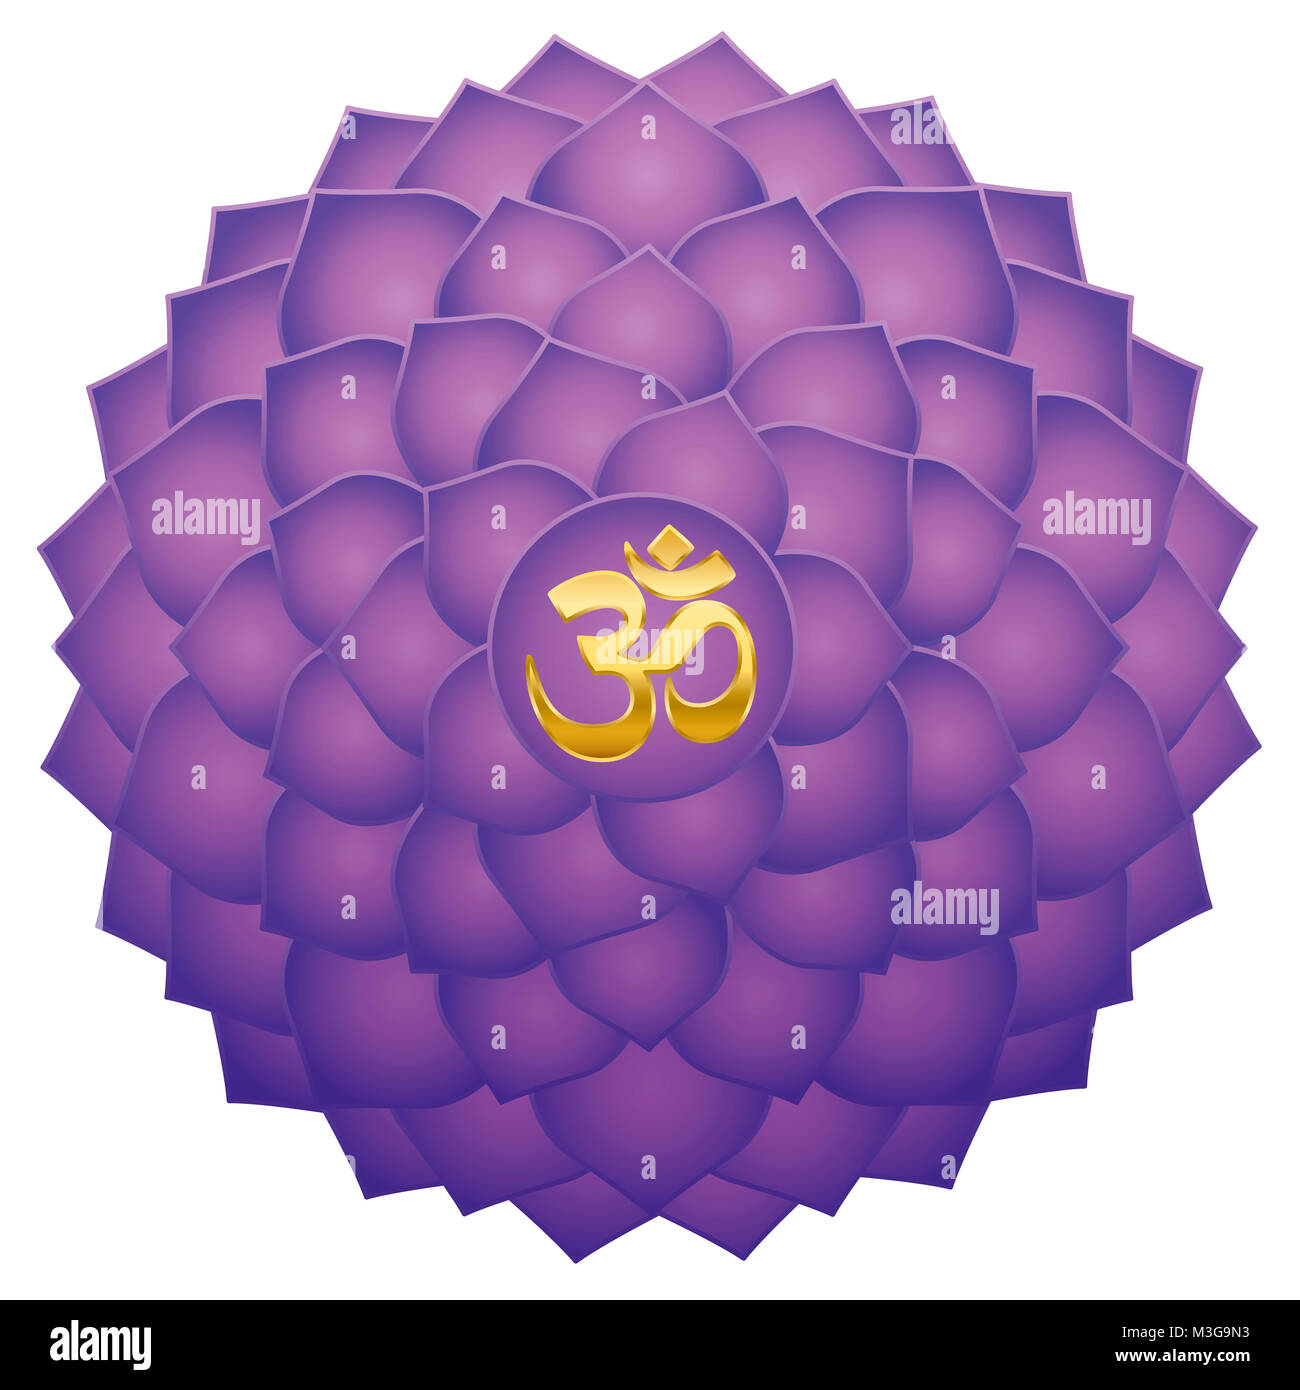 Chakra della Corona con Aum o Om simbolo nel centro. Mille petaled lotus o viola Sahasraha. La guarigione spirituale il simbolo. Foto Stock